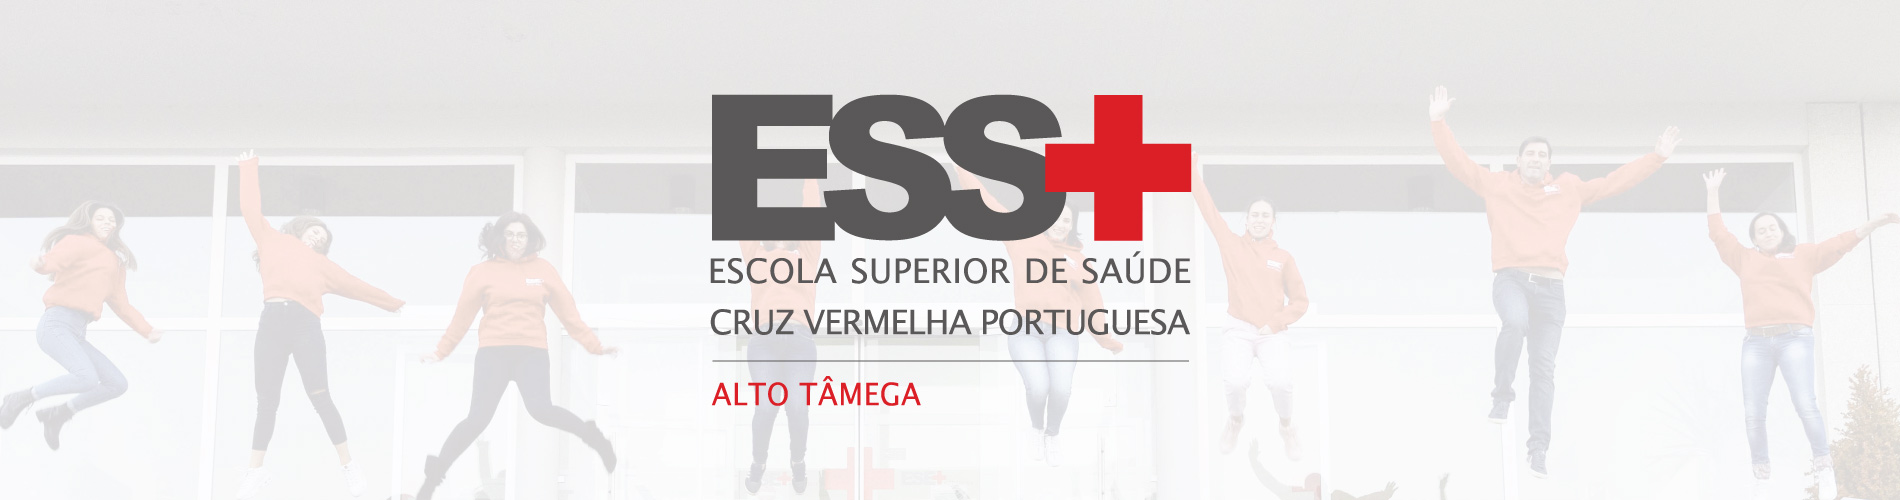 Escola Superior de Saúde Cruz Vermelha Portuguesa - Alto Tâmega